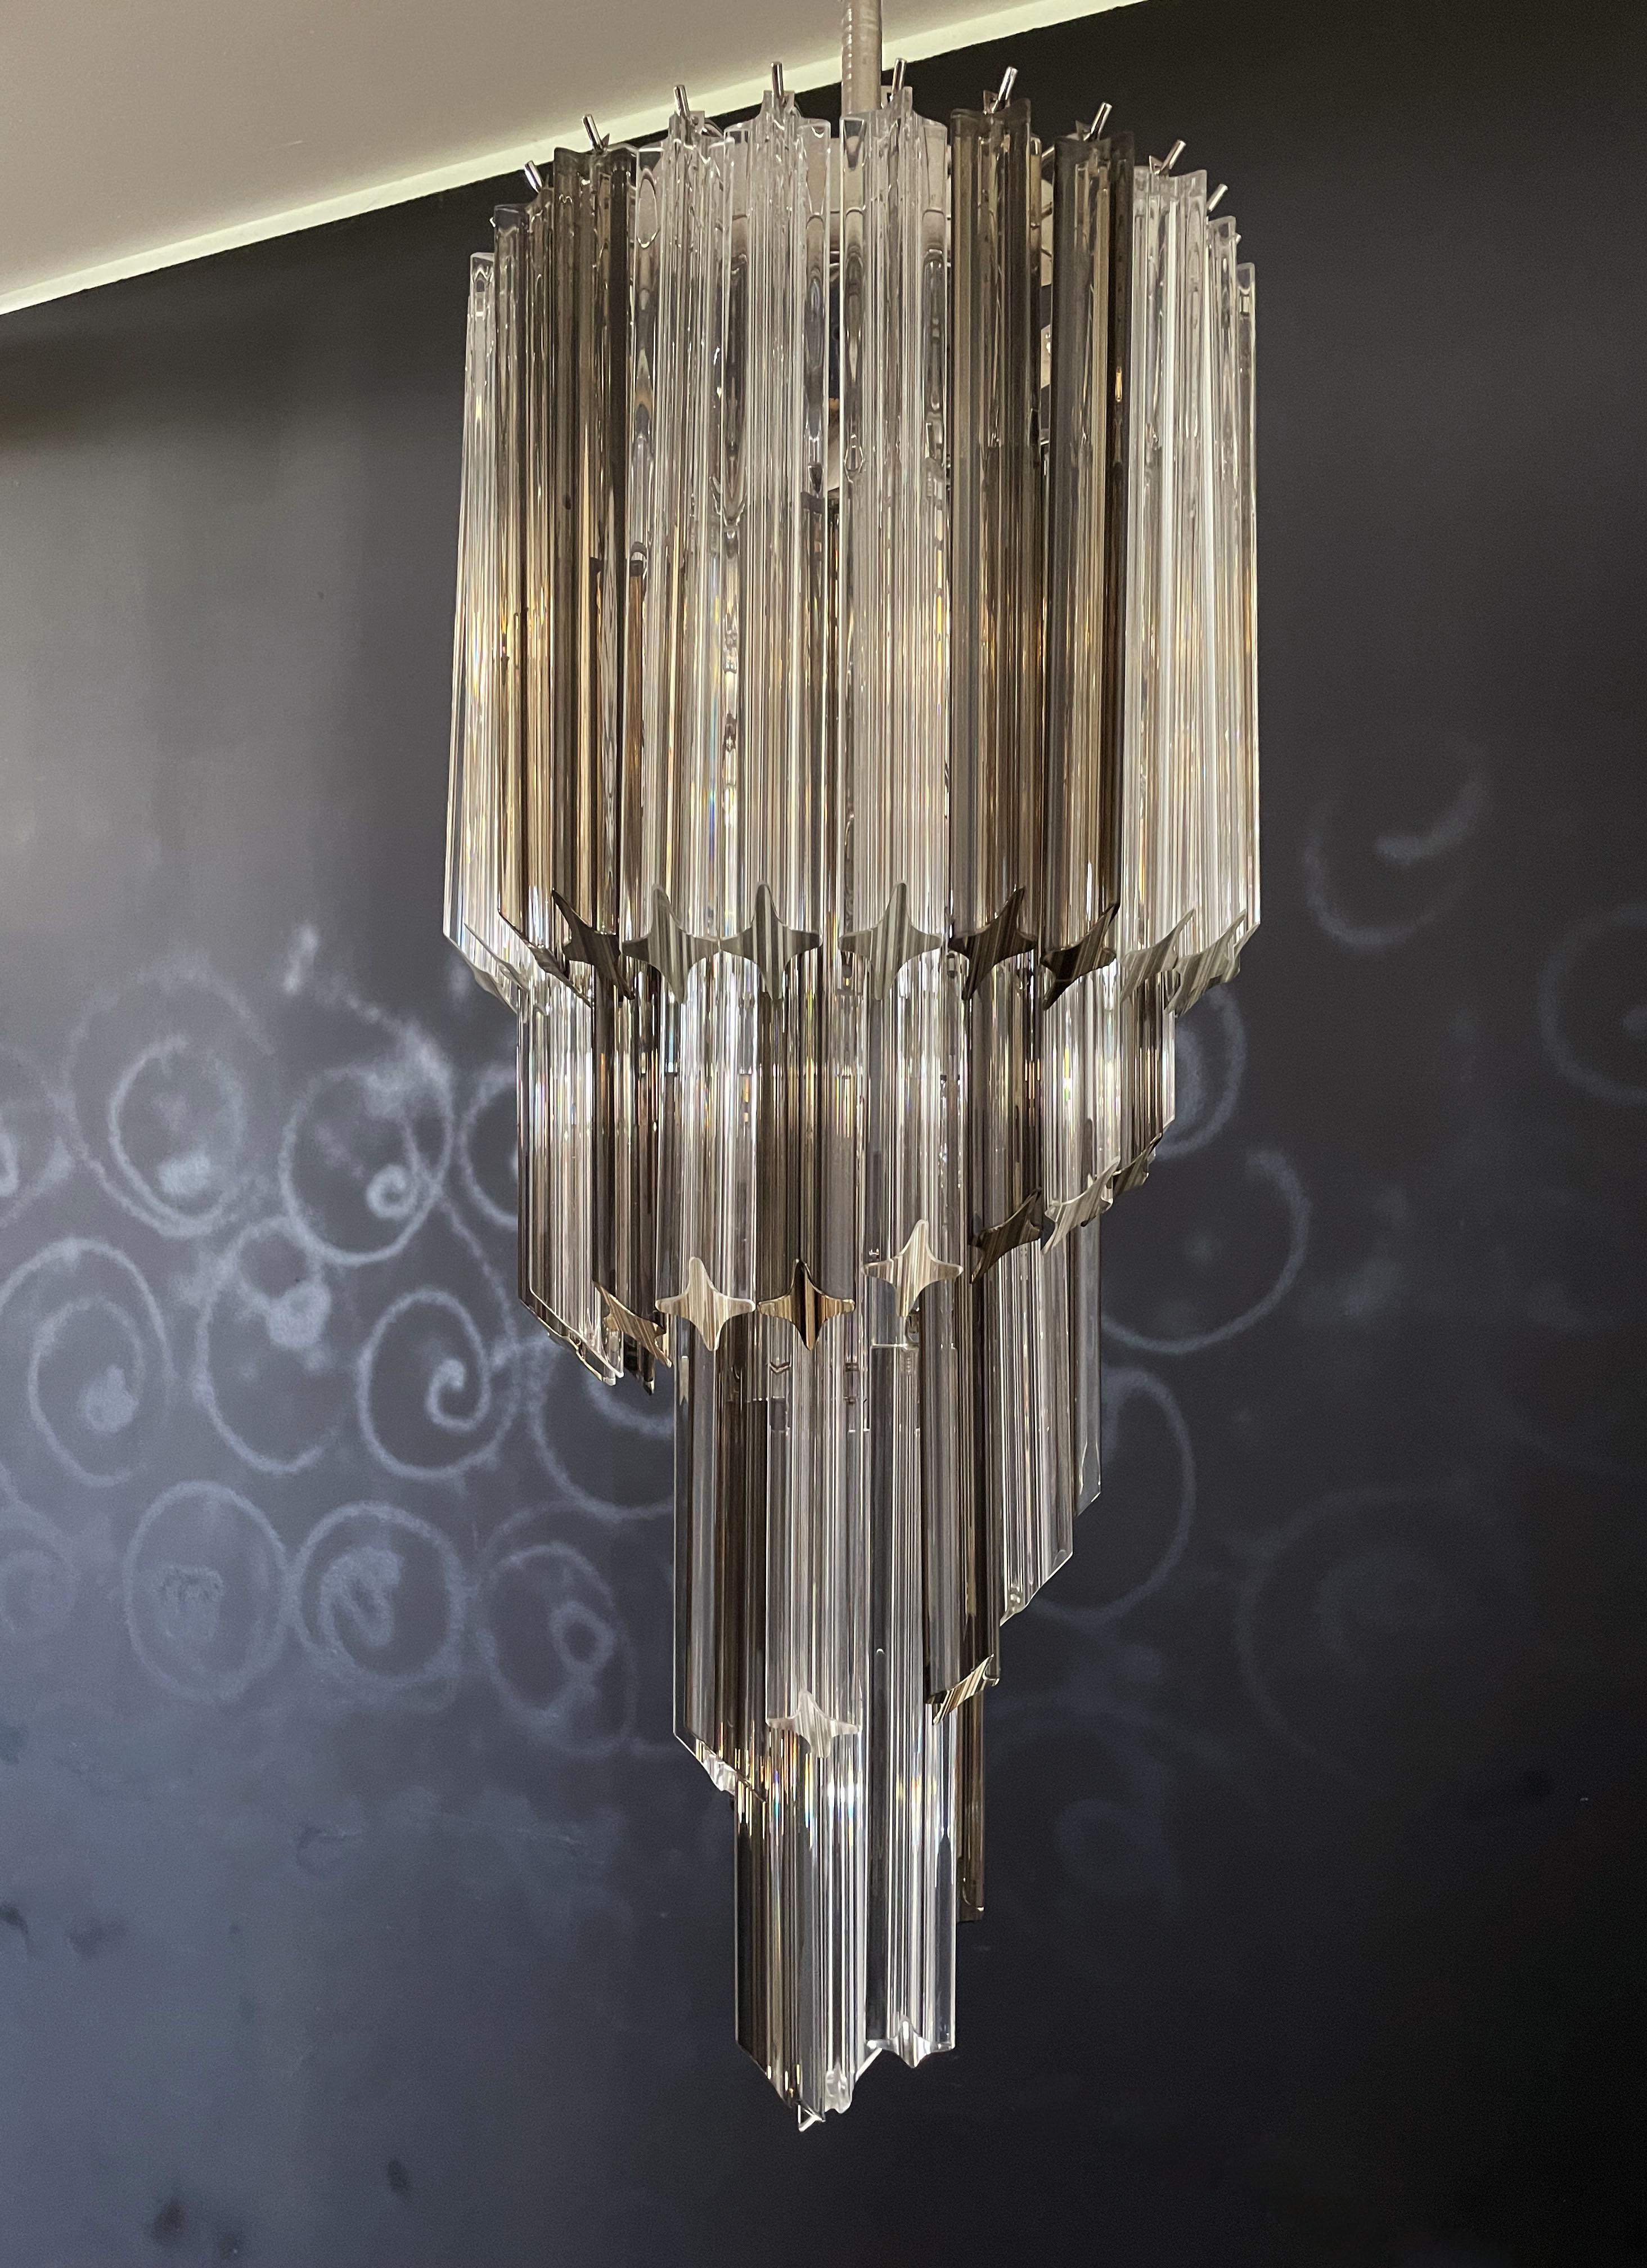 Fantastique et grand lustre de Murano composé de 54 prismes en cristal de Murano (quadriedri) dans une structure en métal chromé. La forme de ce lustre est en spirale. Les verres sont de deux couleurs différentes, 24 fumées et 30